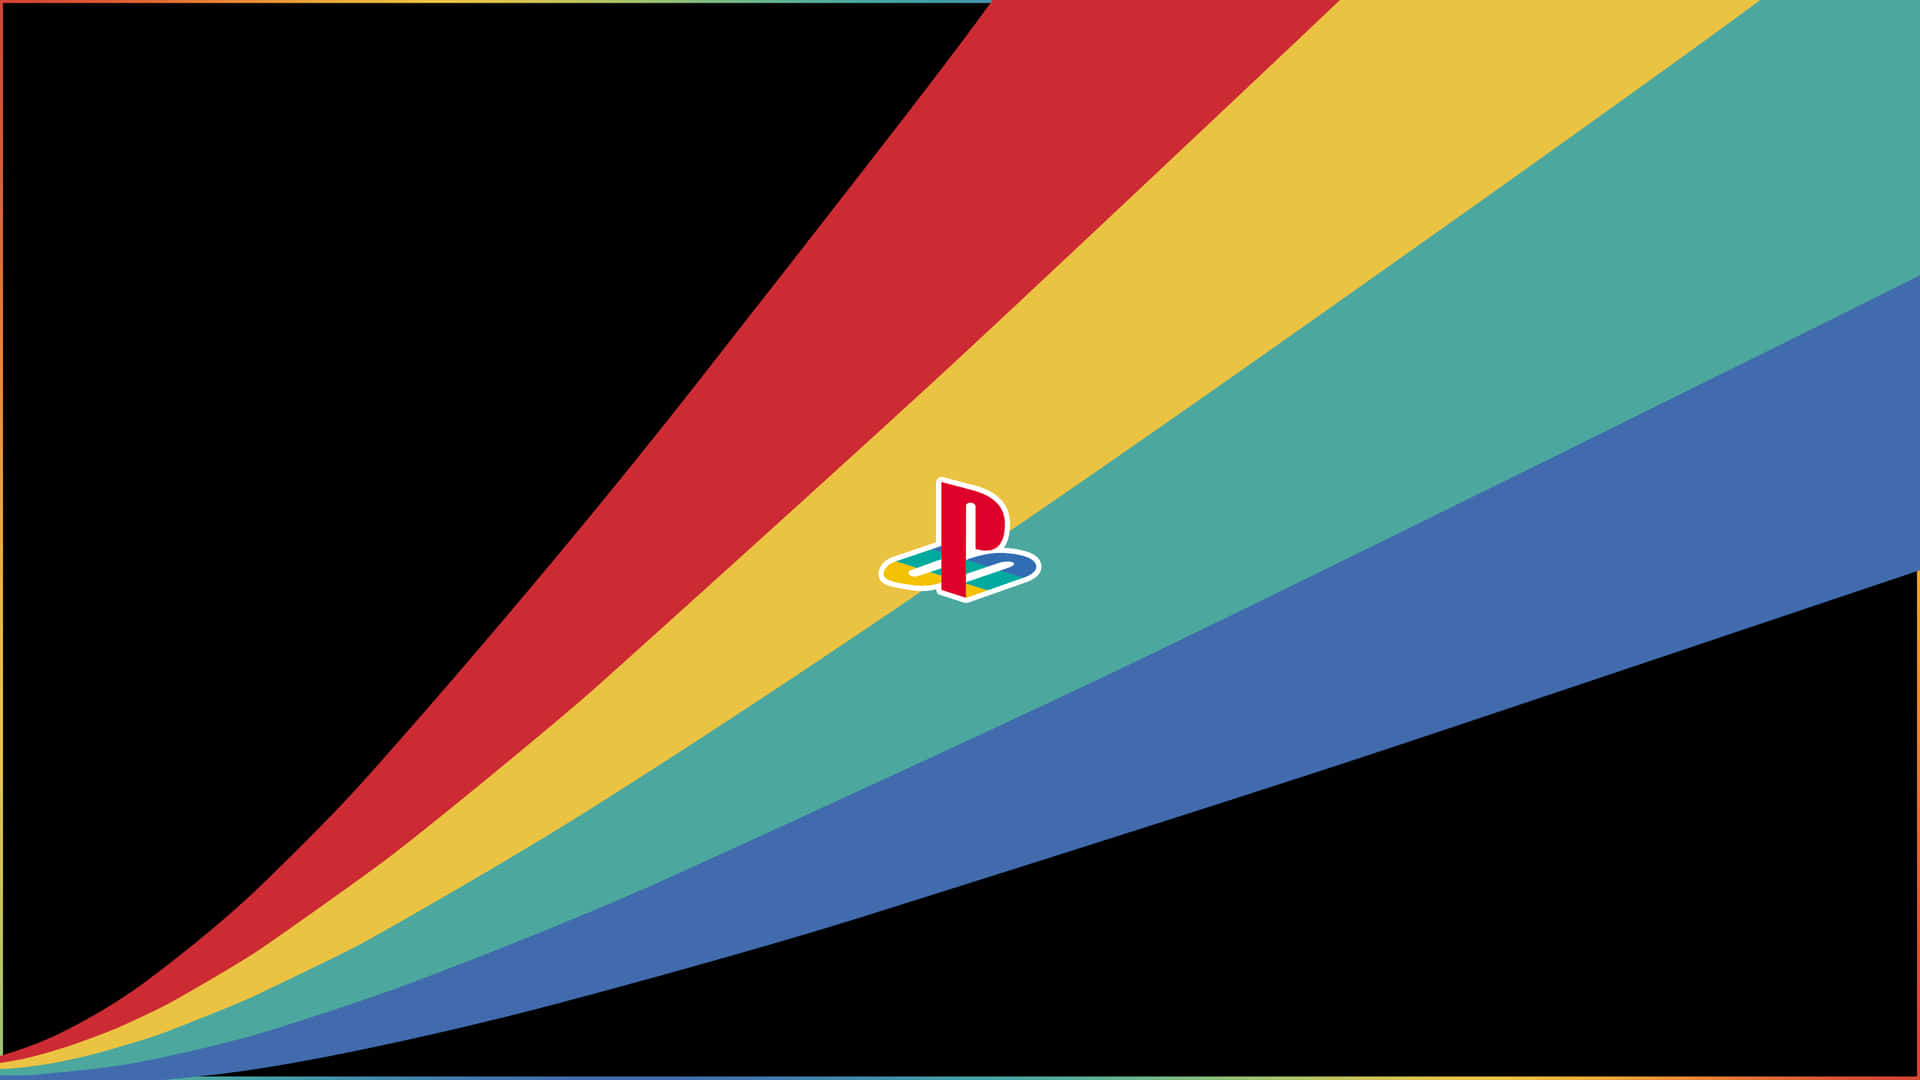 Einregenbogenfarbener Hintergrund Mit Einem Playstation-logo. Wallpaper